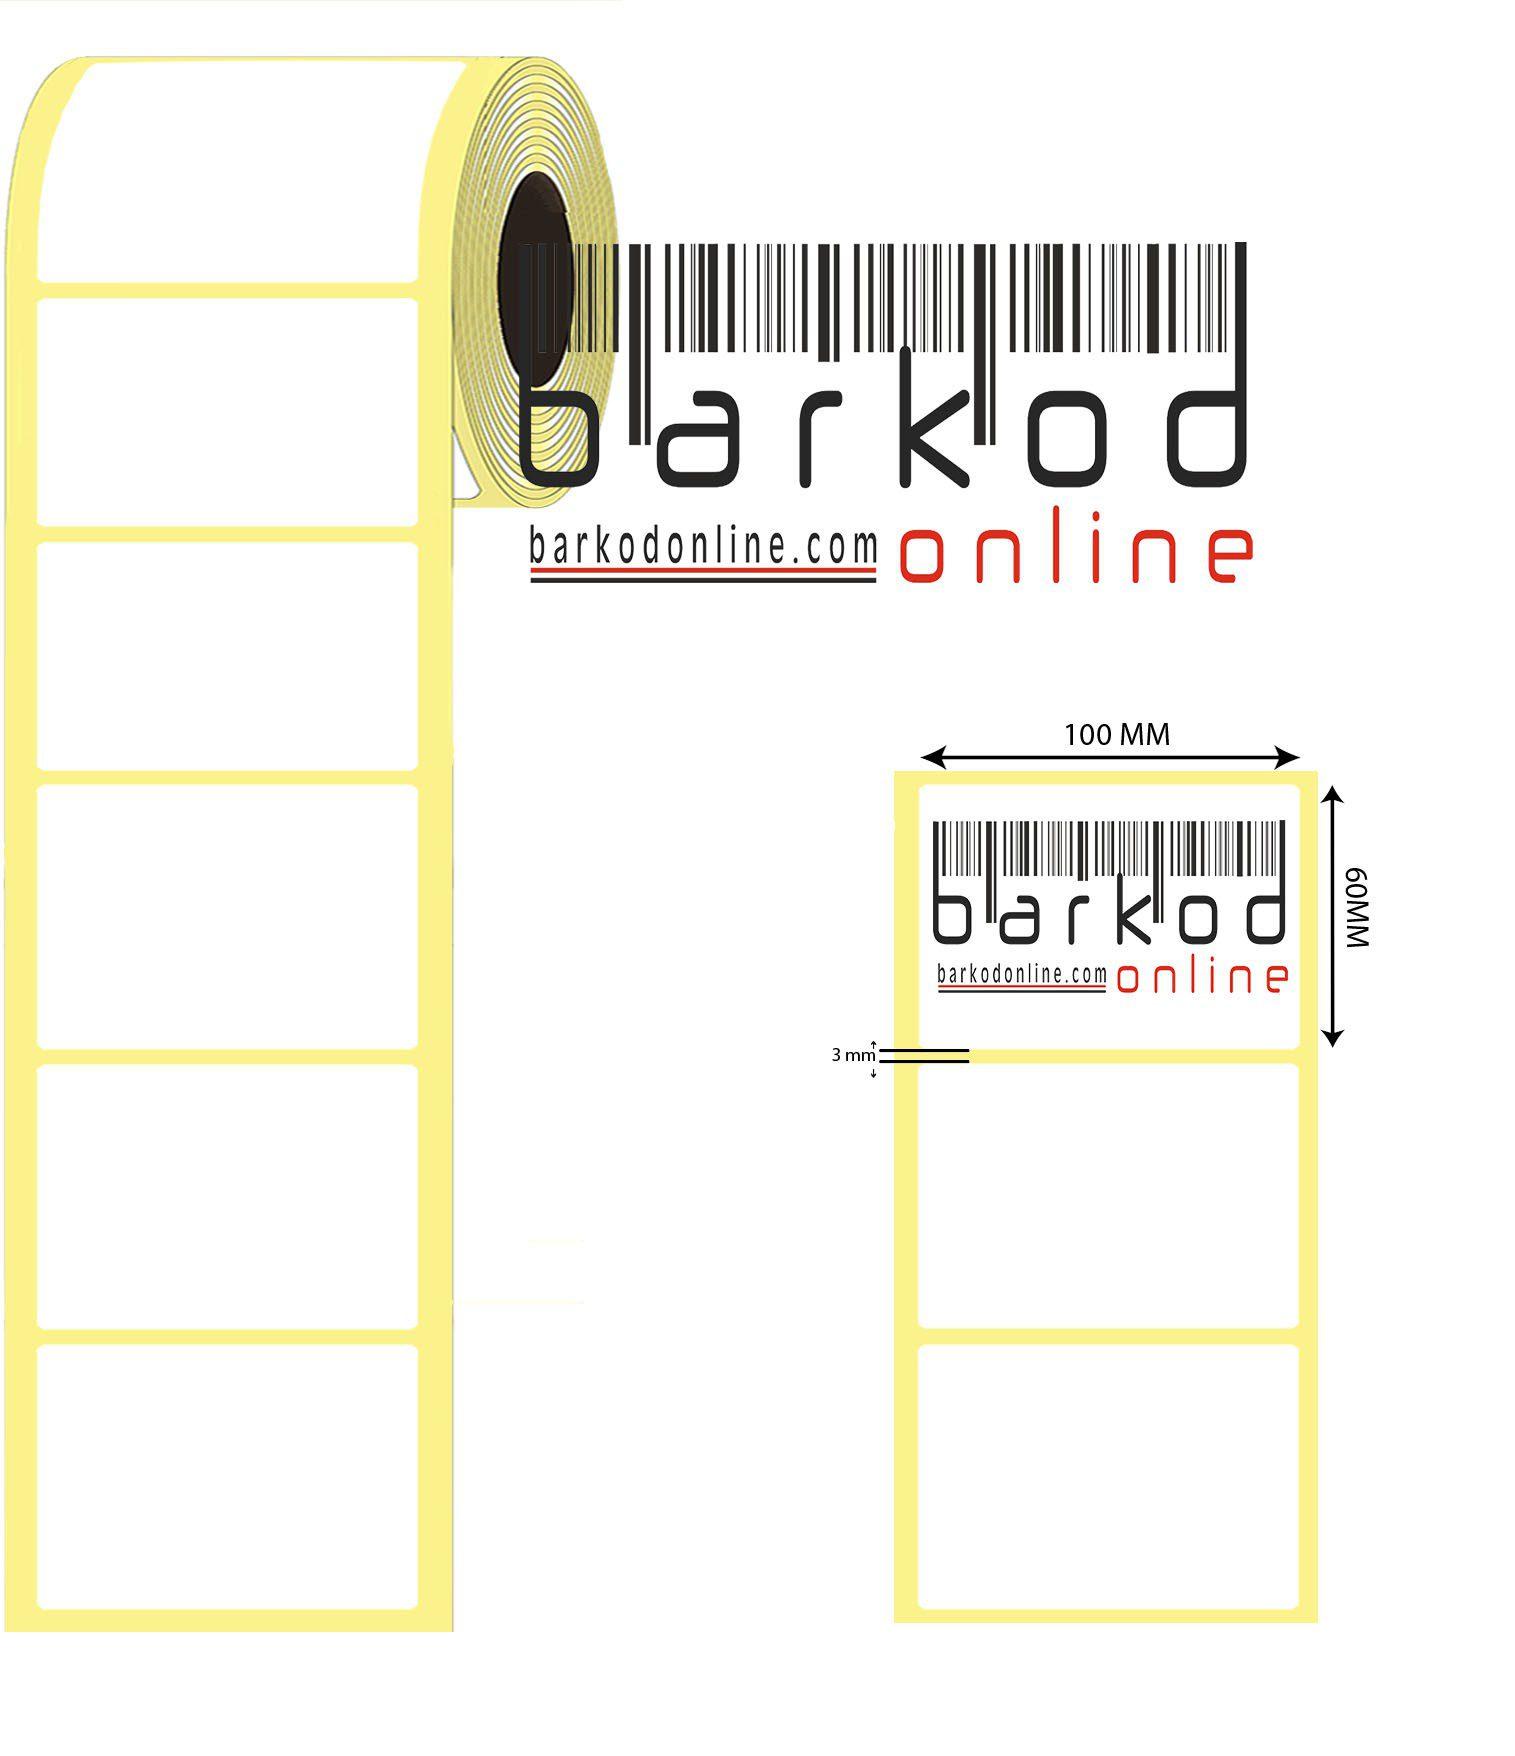 Barkod Online Etiket Modelleri - Kırıkkale Haber, Son Dakika Kırıkkale Haberleri